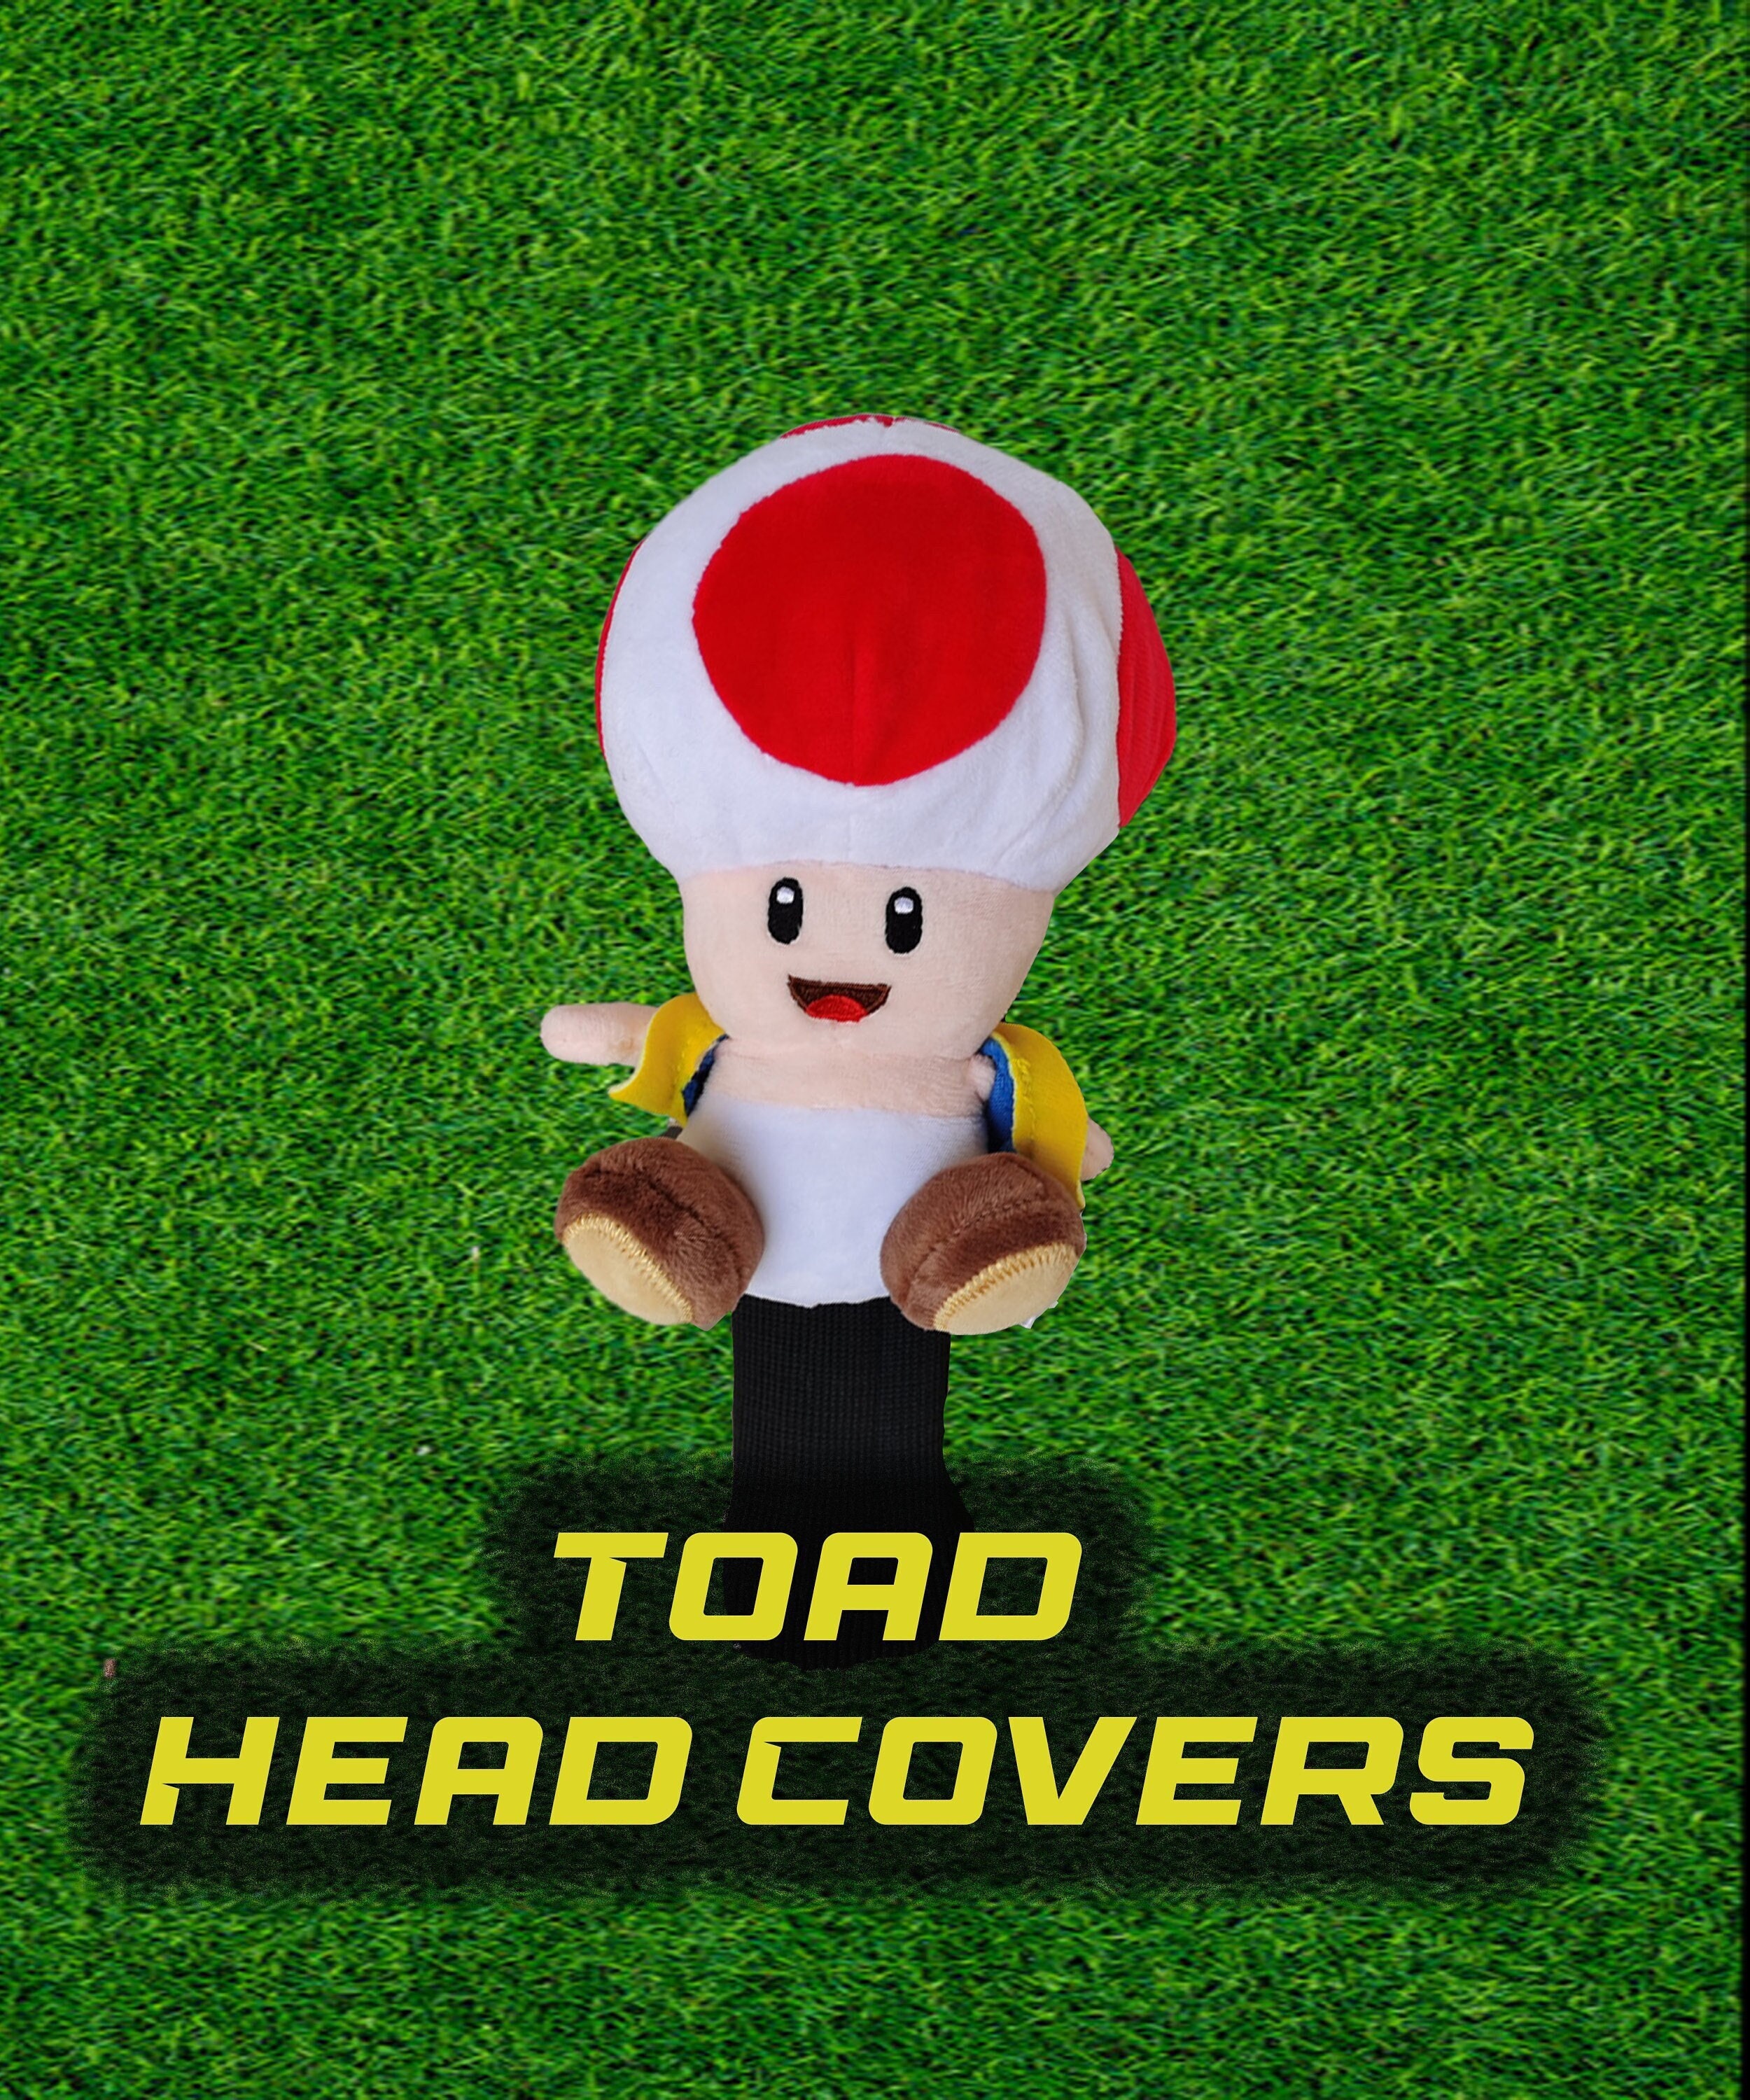 Super Mario All Star Collection Toad Stuffed Plush, Multicolored, 7 